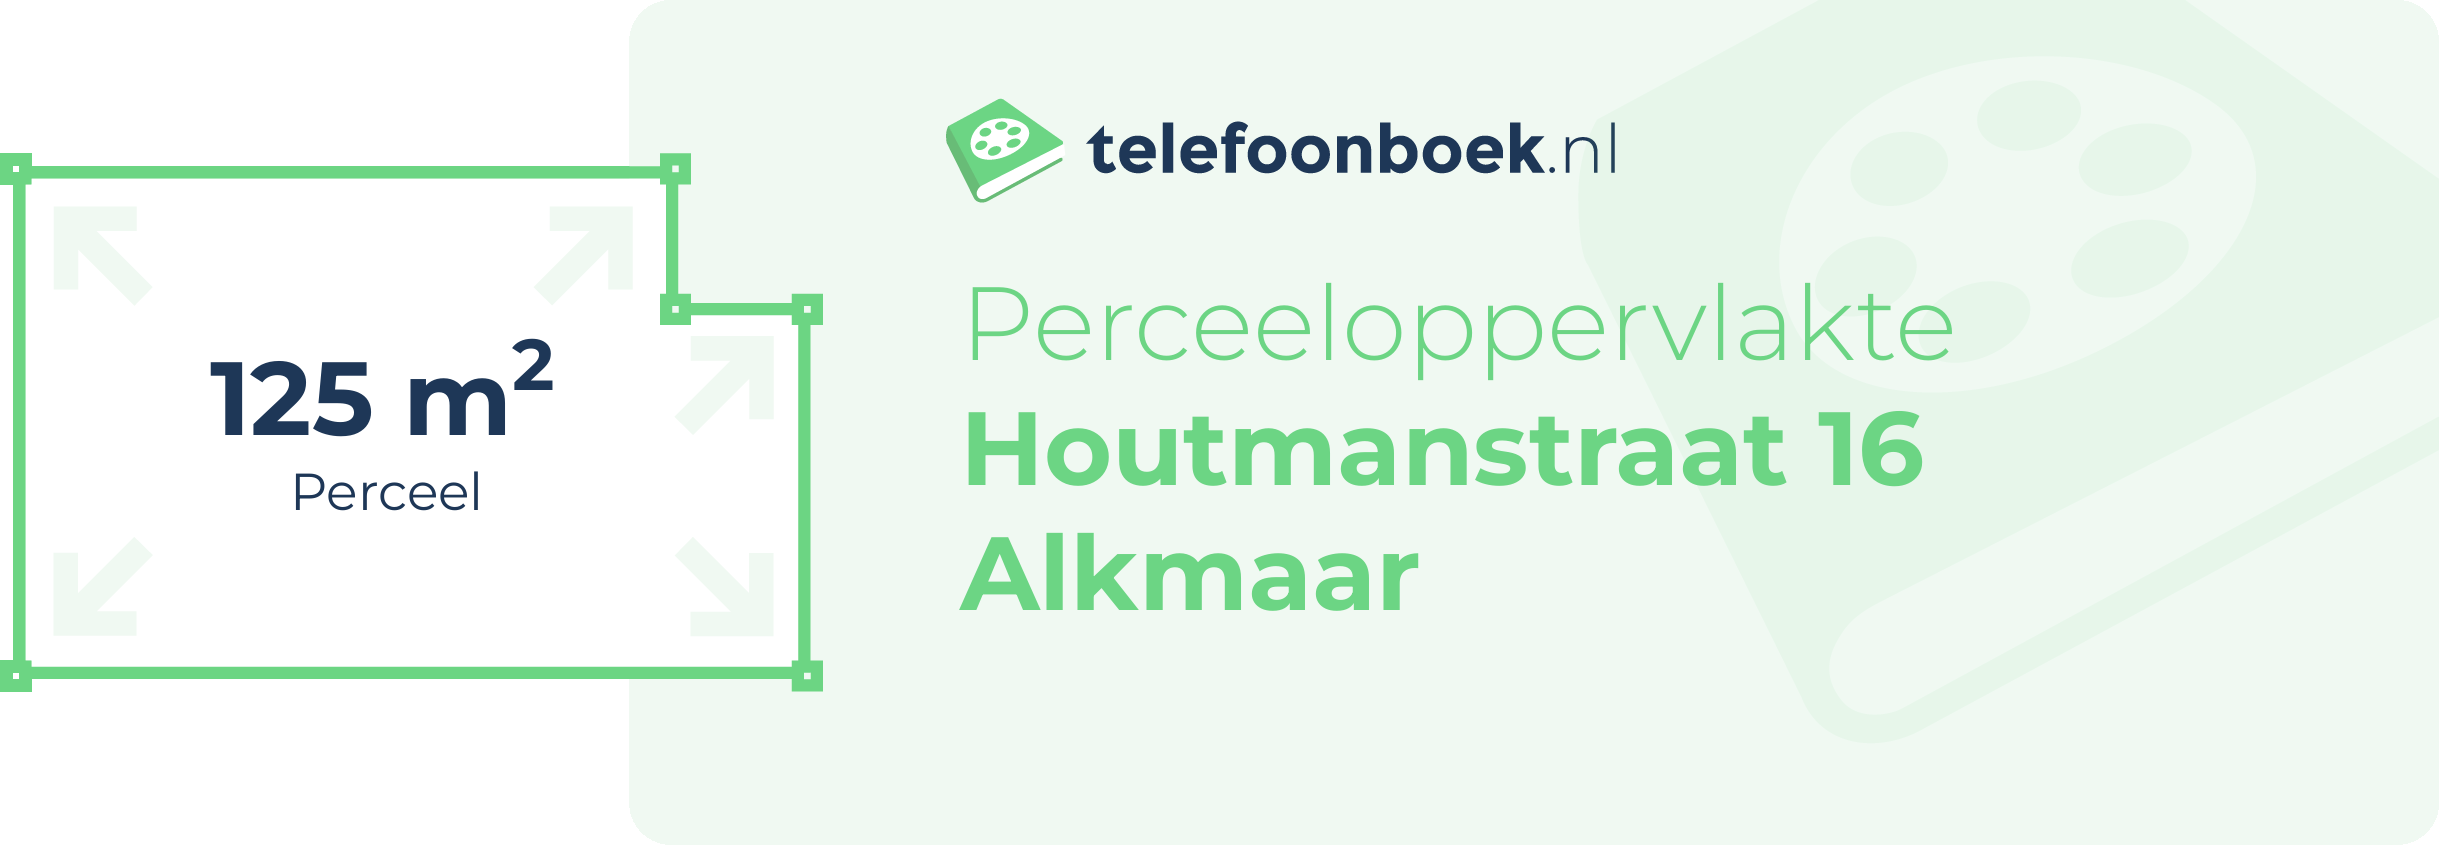 Perceeloppervlakte Houtmanstraat 16 Alkmaar